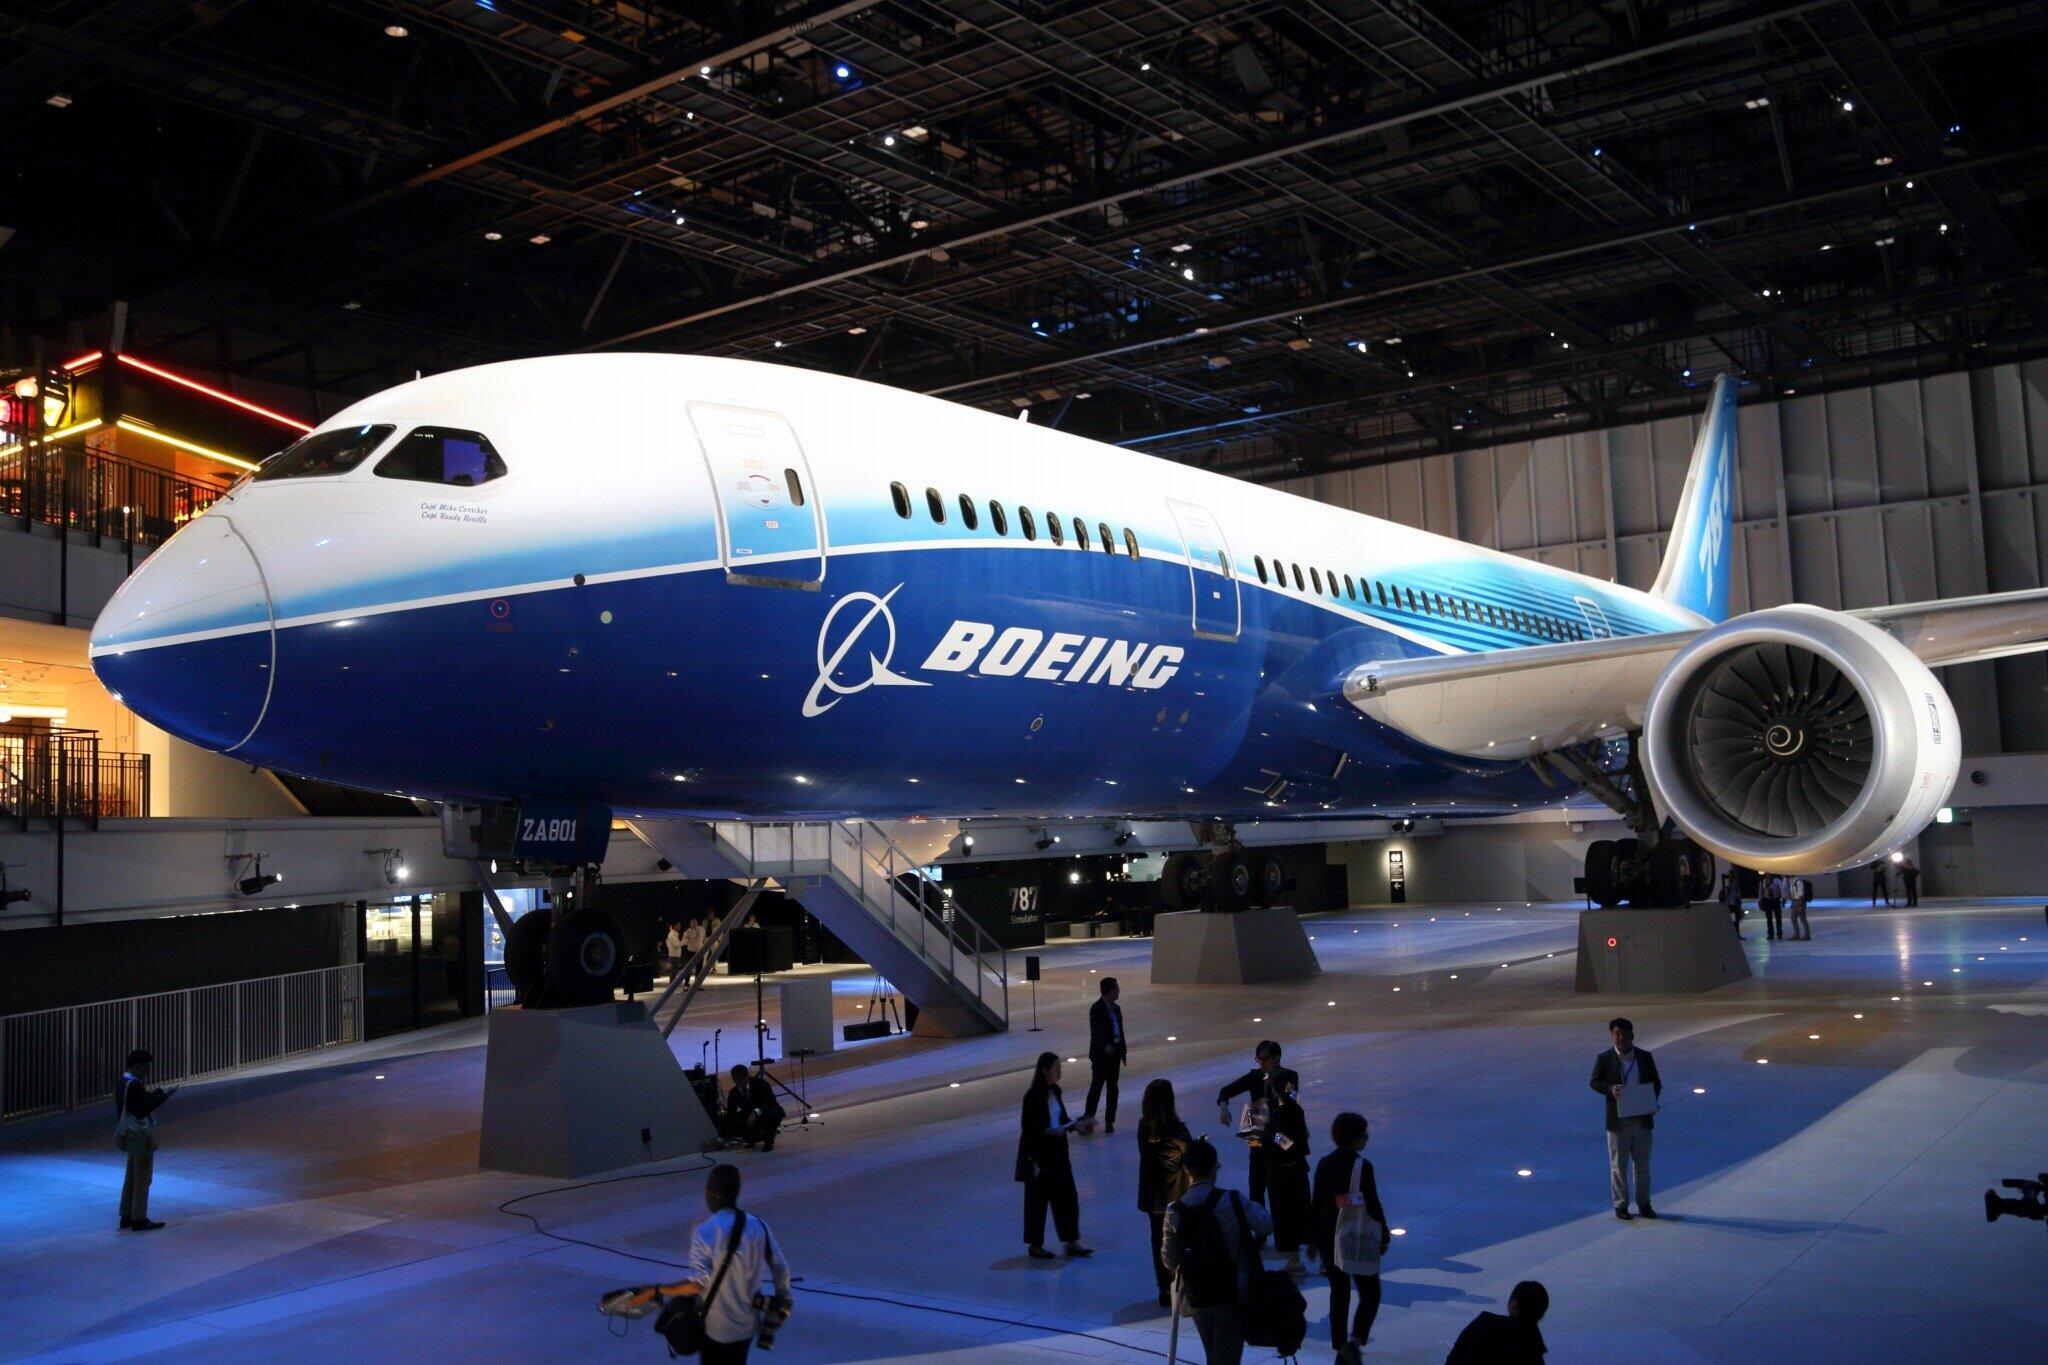 ボーイング787型機の生産縮小の影響は日本企業にも及ぶ。写真は初号機「ZA001」。中部国際空港内の商業施設「FLIGHT OF DREAMS」（フライト・オブ・ドリームズ）で展示されている